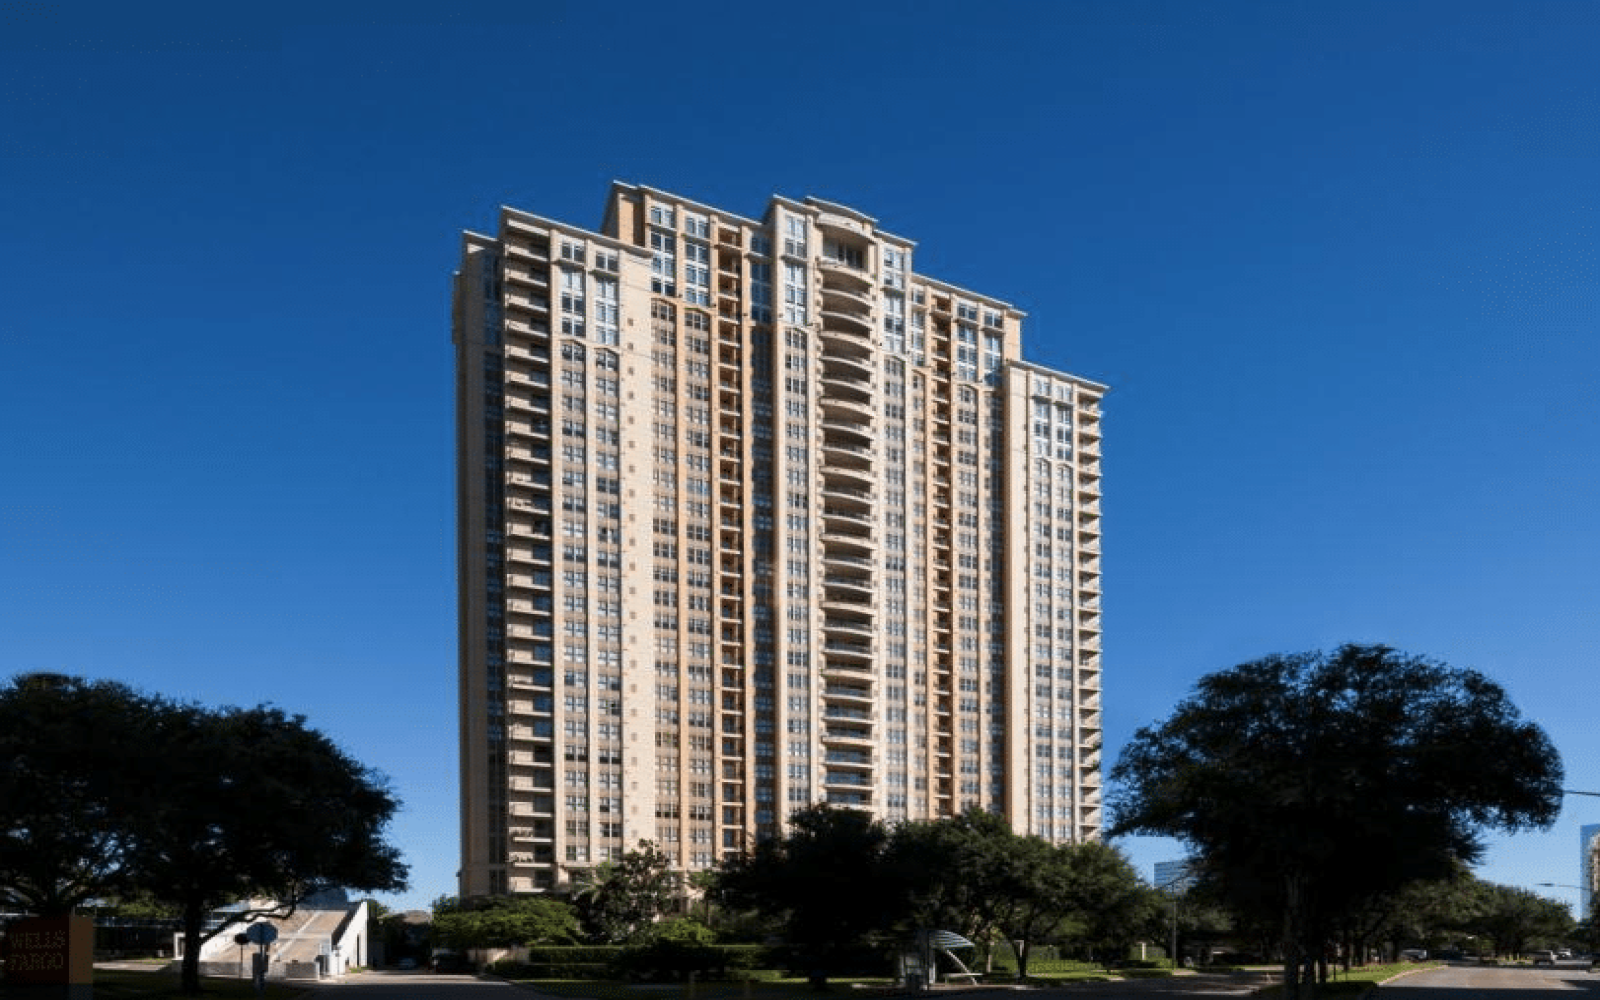 1200 Post Oak Blvd,Houston,77056,Apartment,Post Oak Blvd,2822